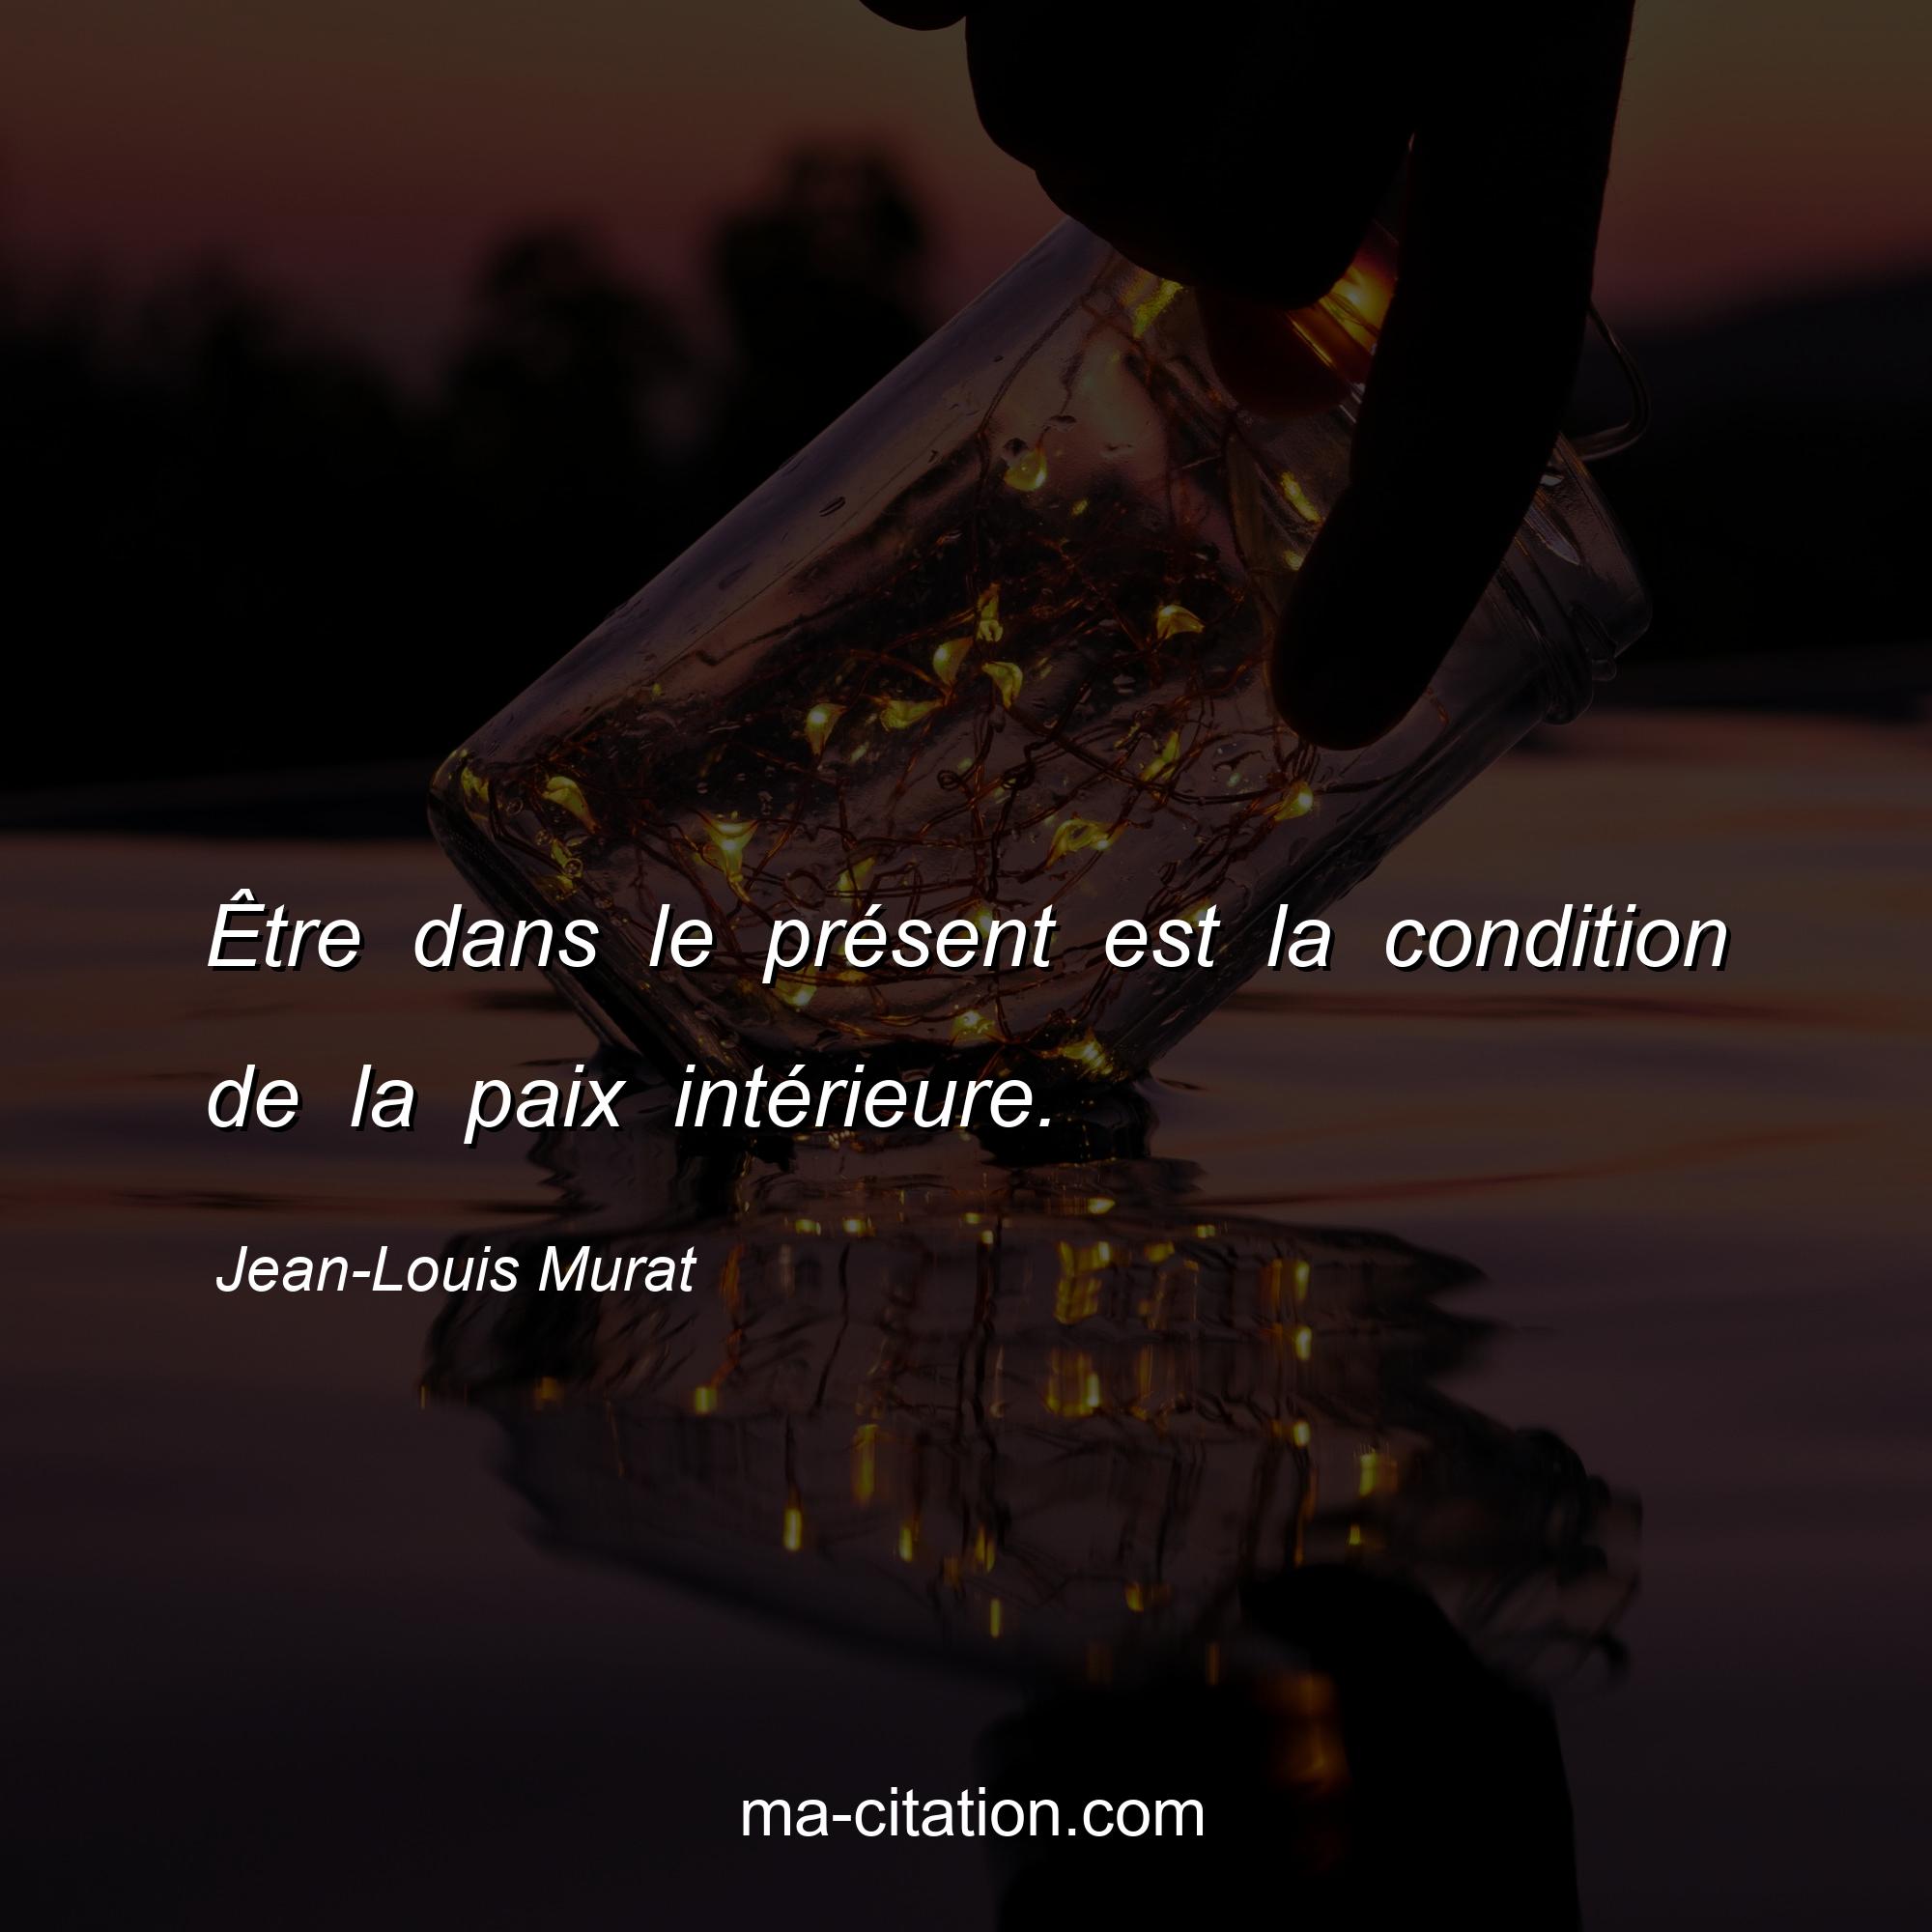 Jean-Louis Murat : Être dans le présent est la condition de la paix intérieure.